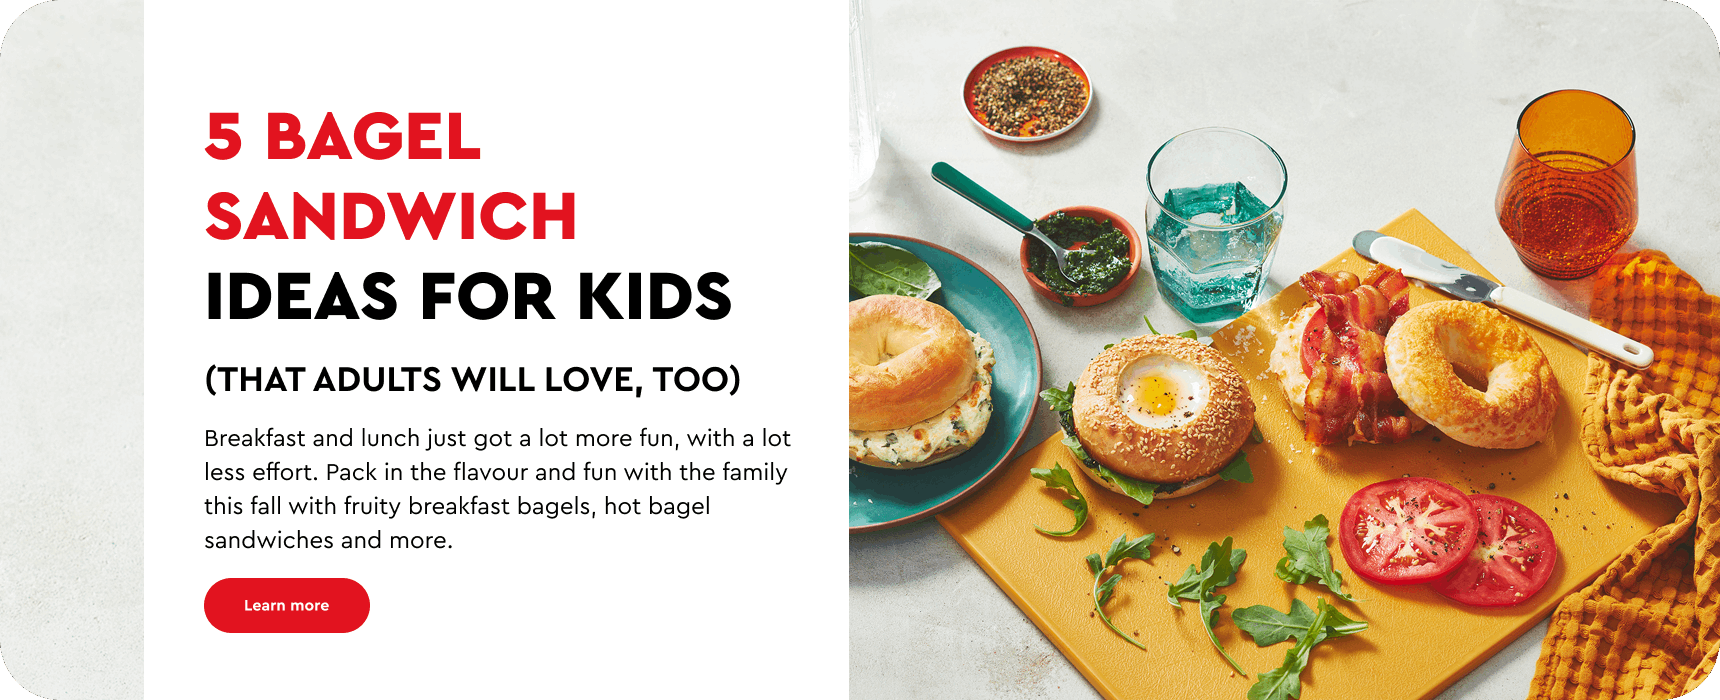 5 bagel sandwich ideas for kids